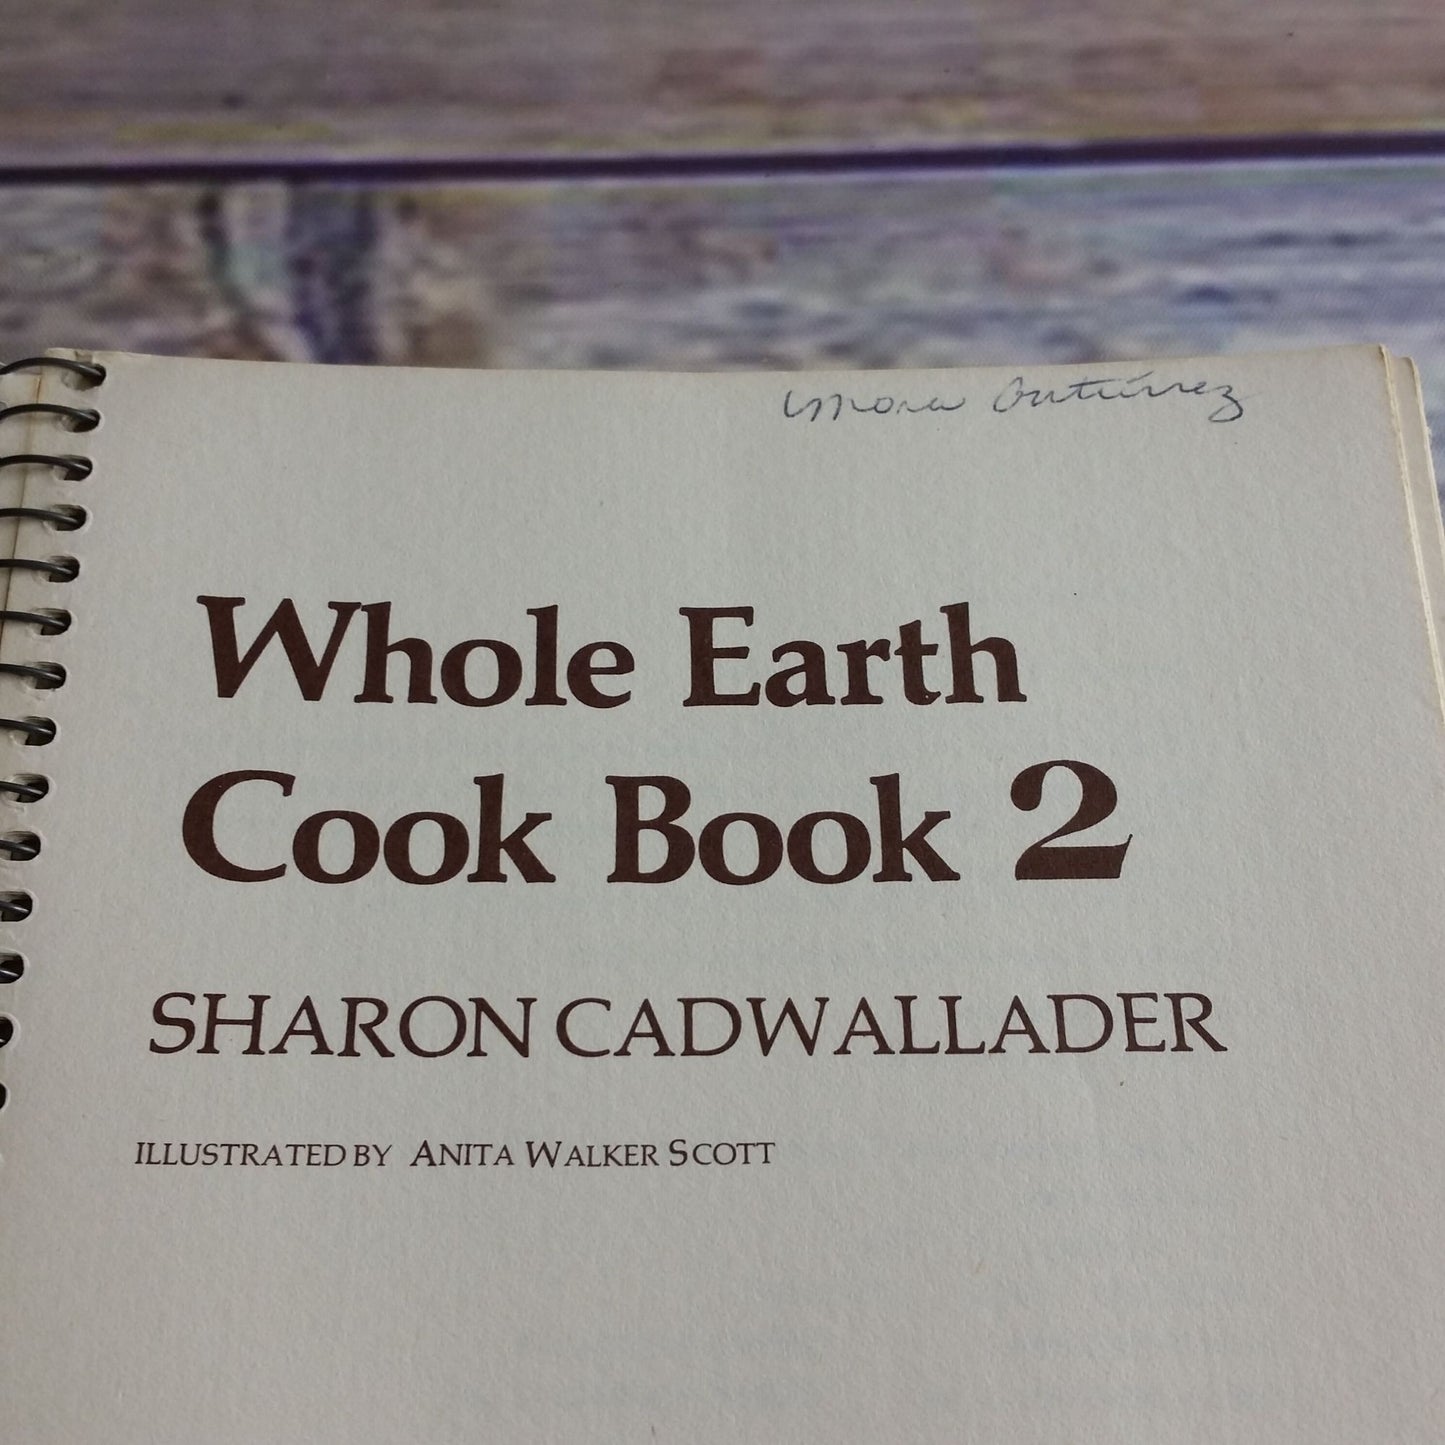 Vintage Cookbook Whole Earth Cook Book 2 Natural Cooking Spiral Bound 1975 Sharon Cadwallader Judi Ohr Santa Cruz Natural Foods Restaurant